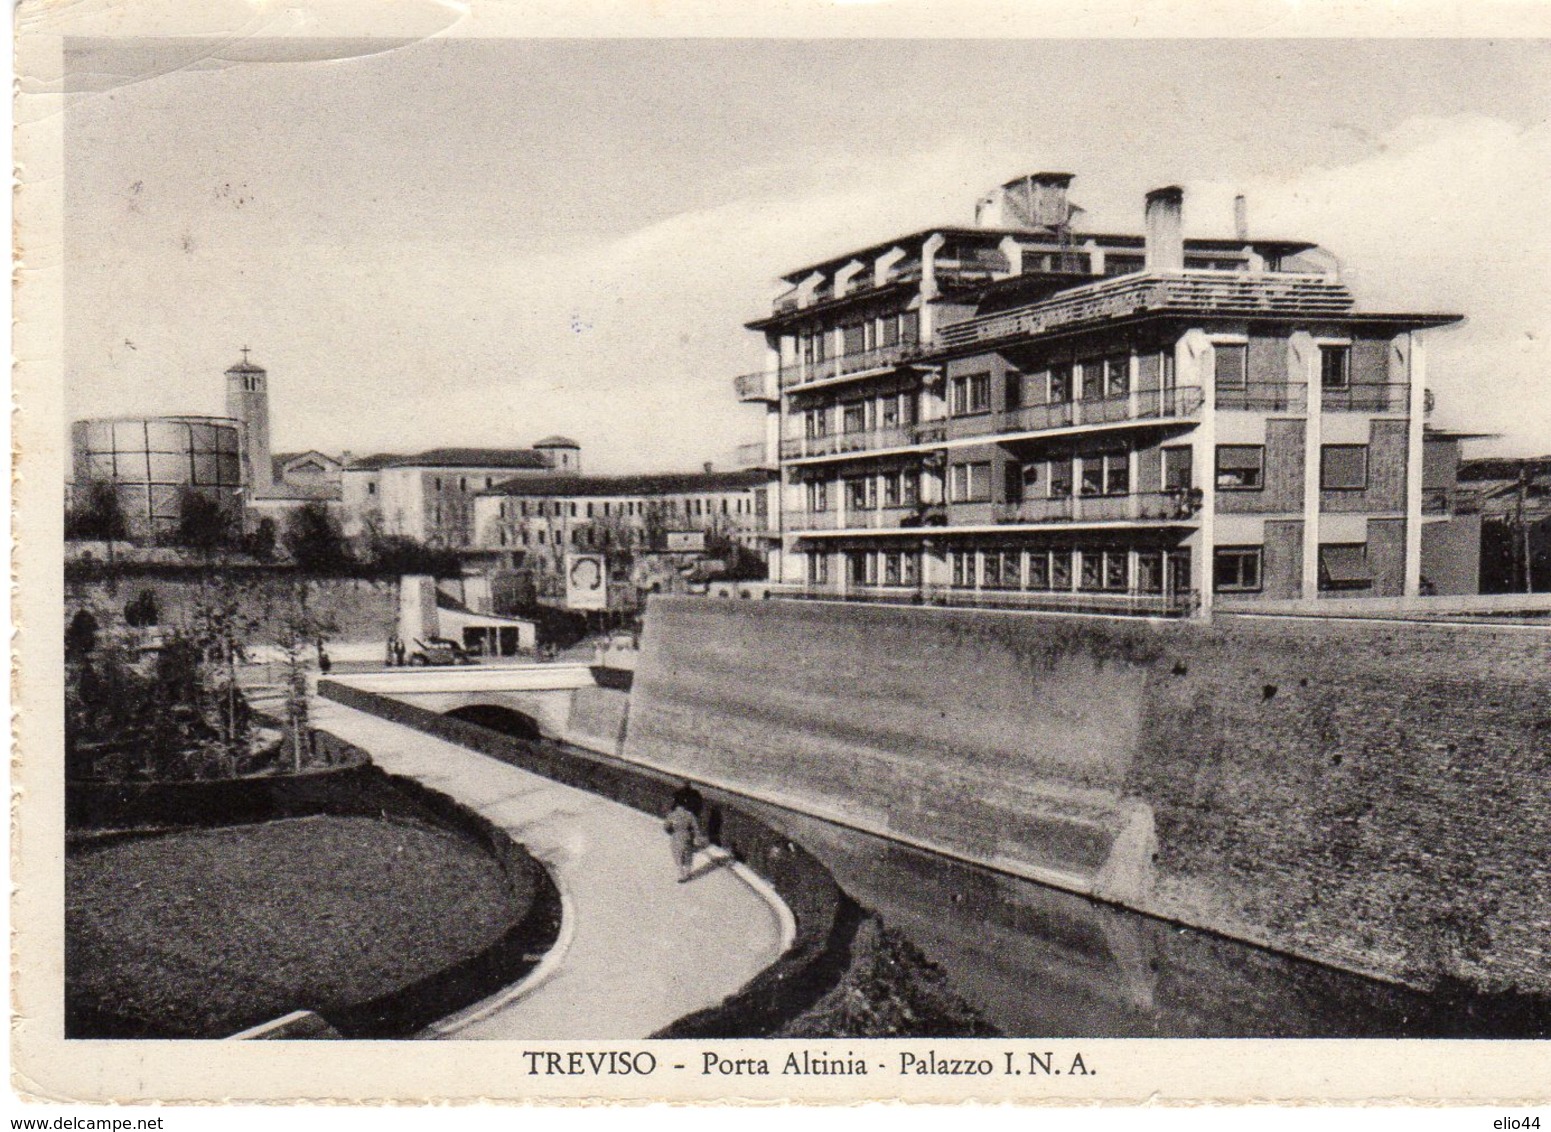 Veneto - Treviso - Porta Altinia - Palazzo I.N.A. - Treviso